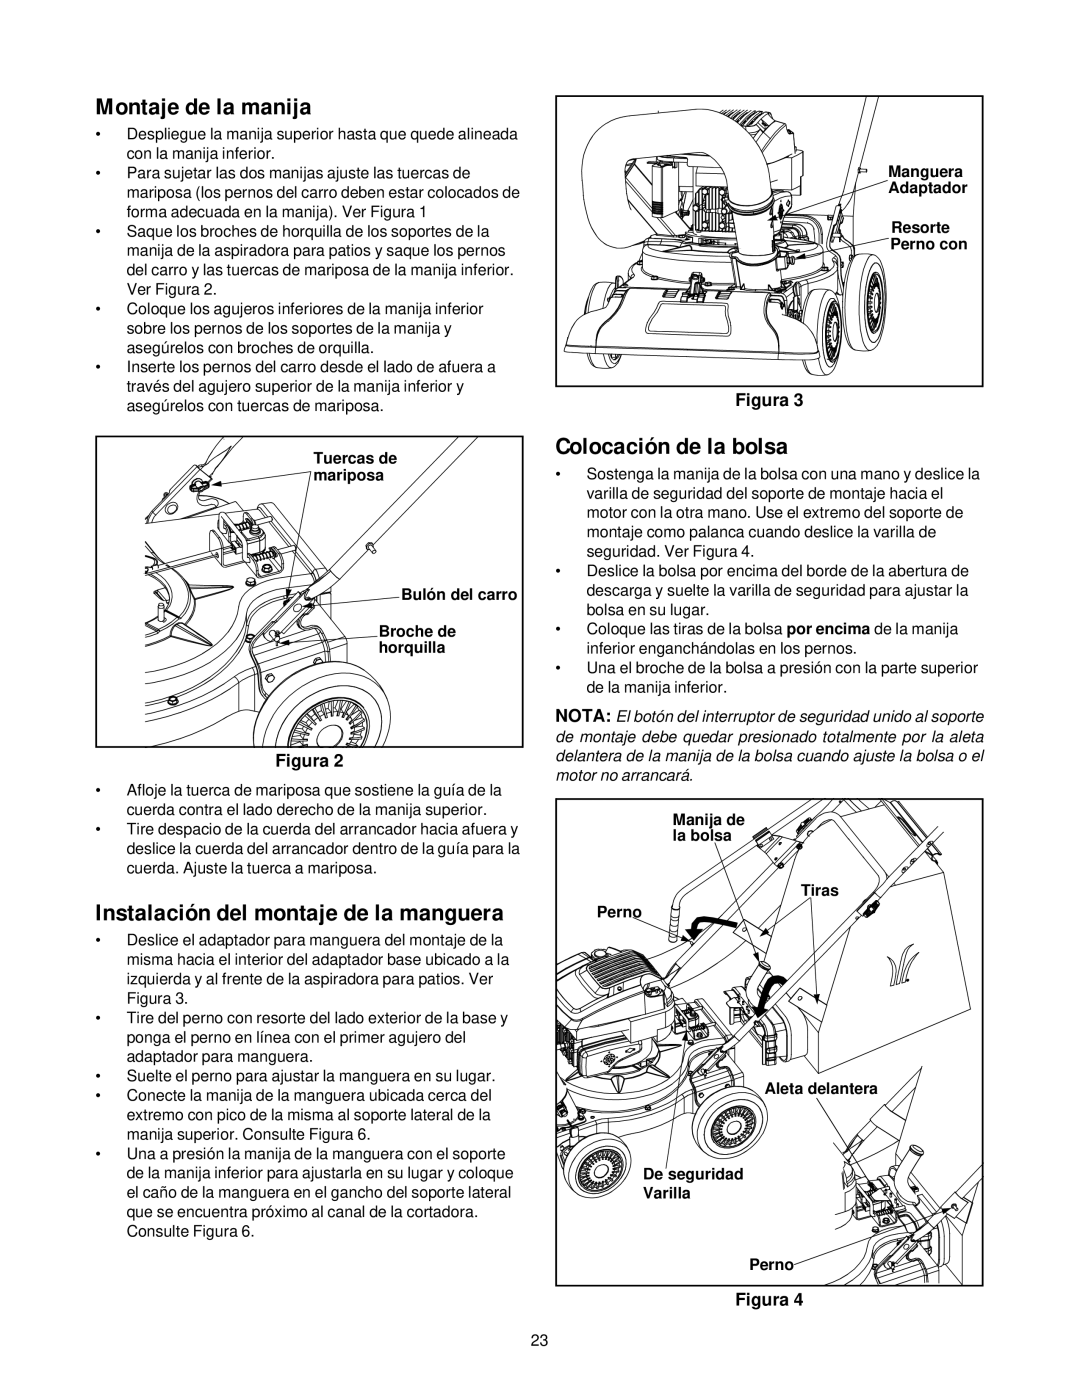 Yard-Man 24A-060F401 manual Montaje de la manija, Colocación de la bolsa 